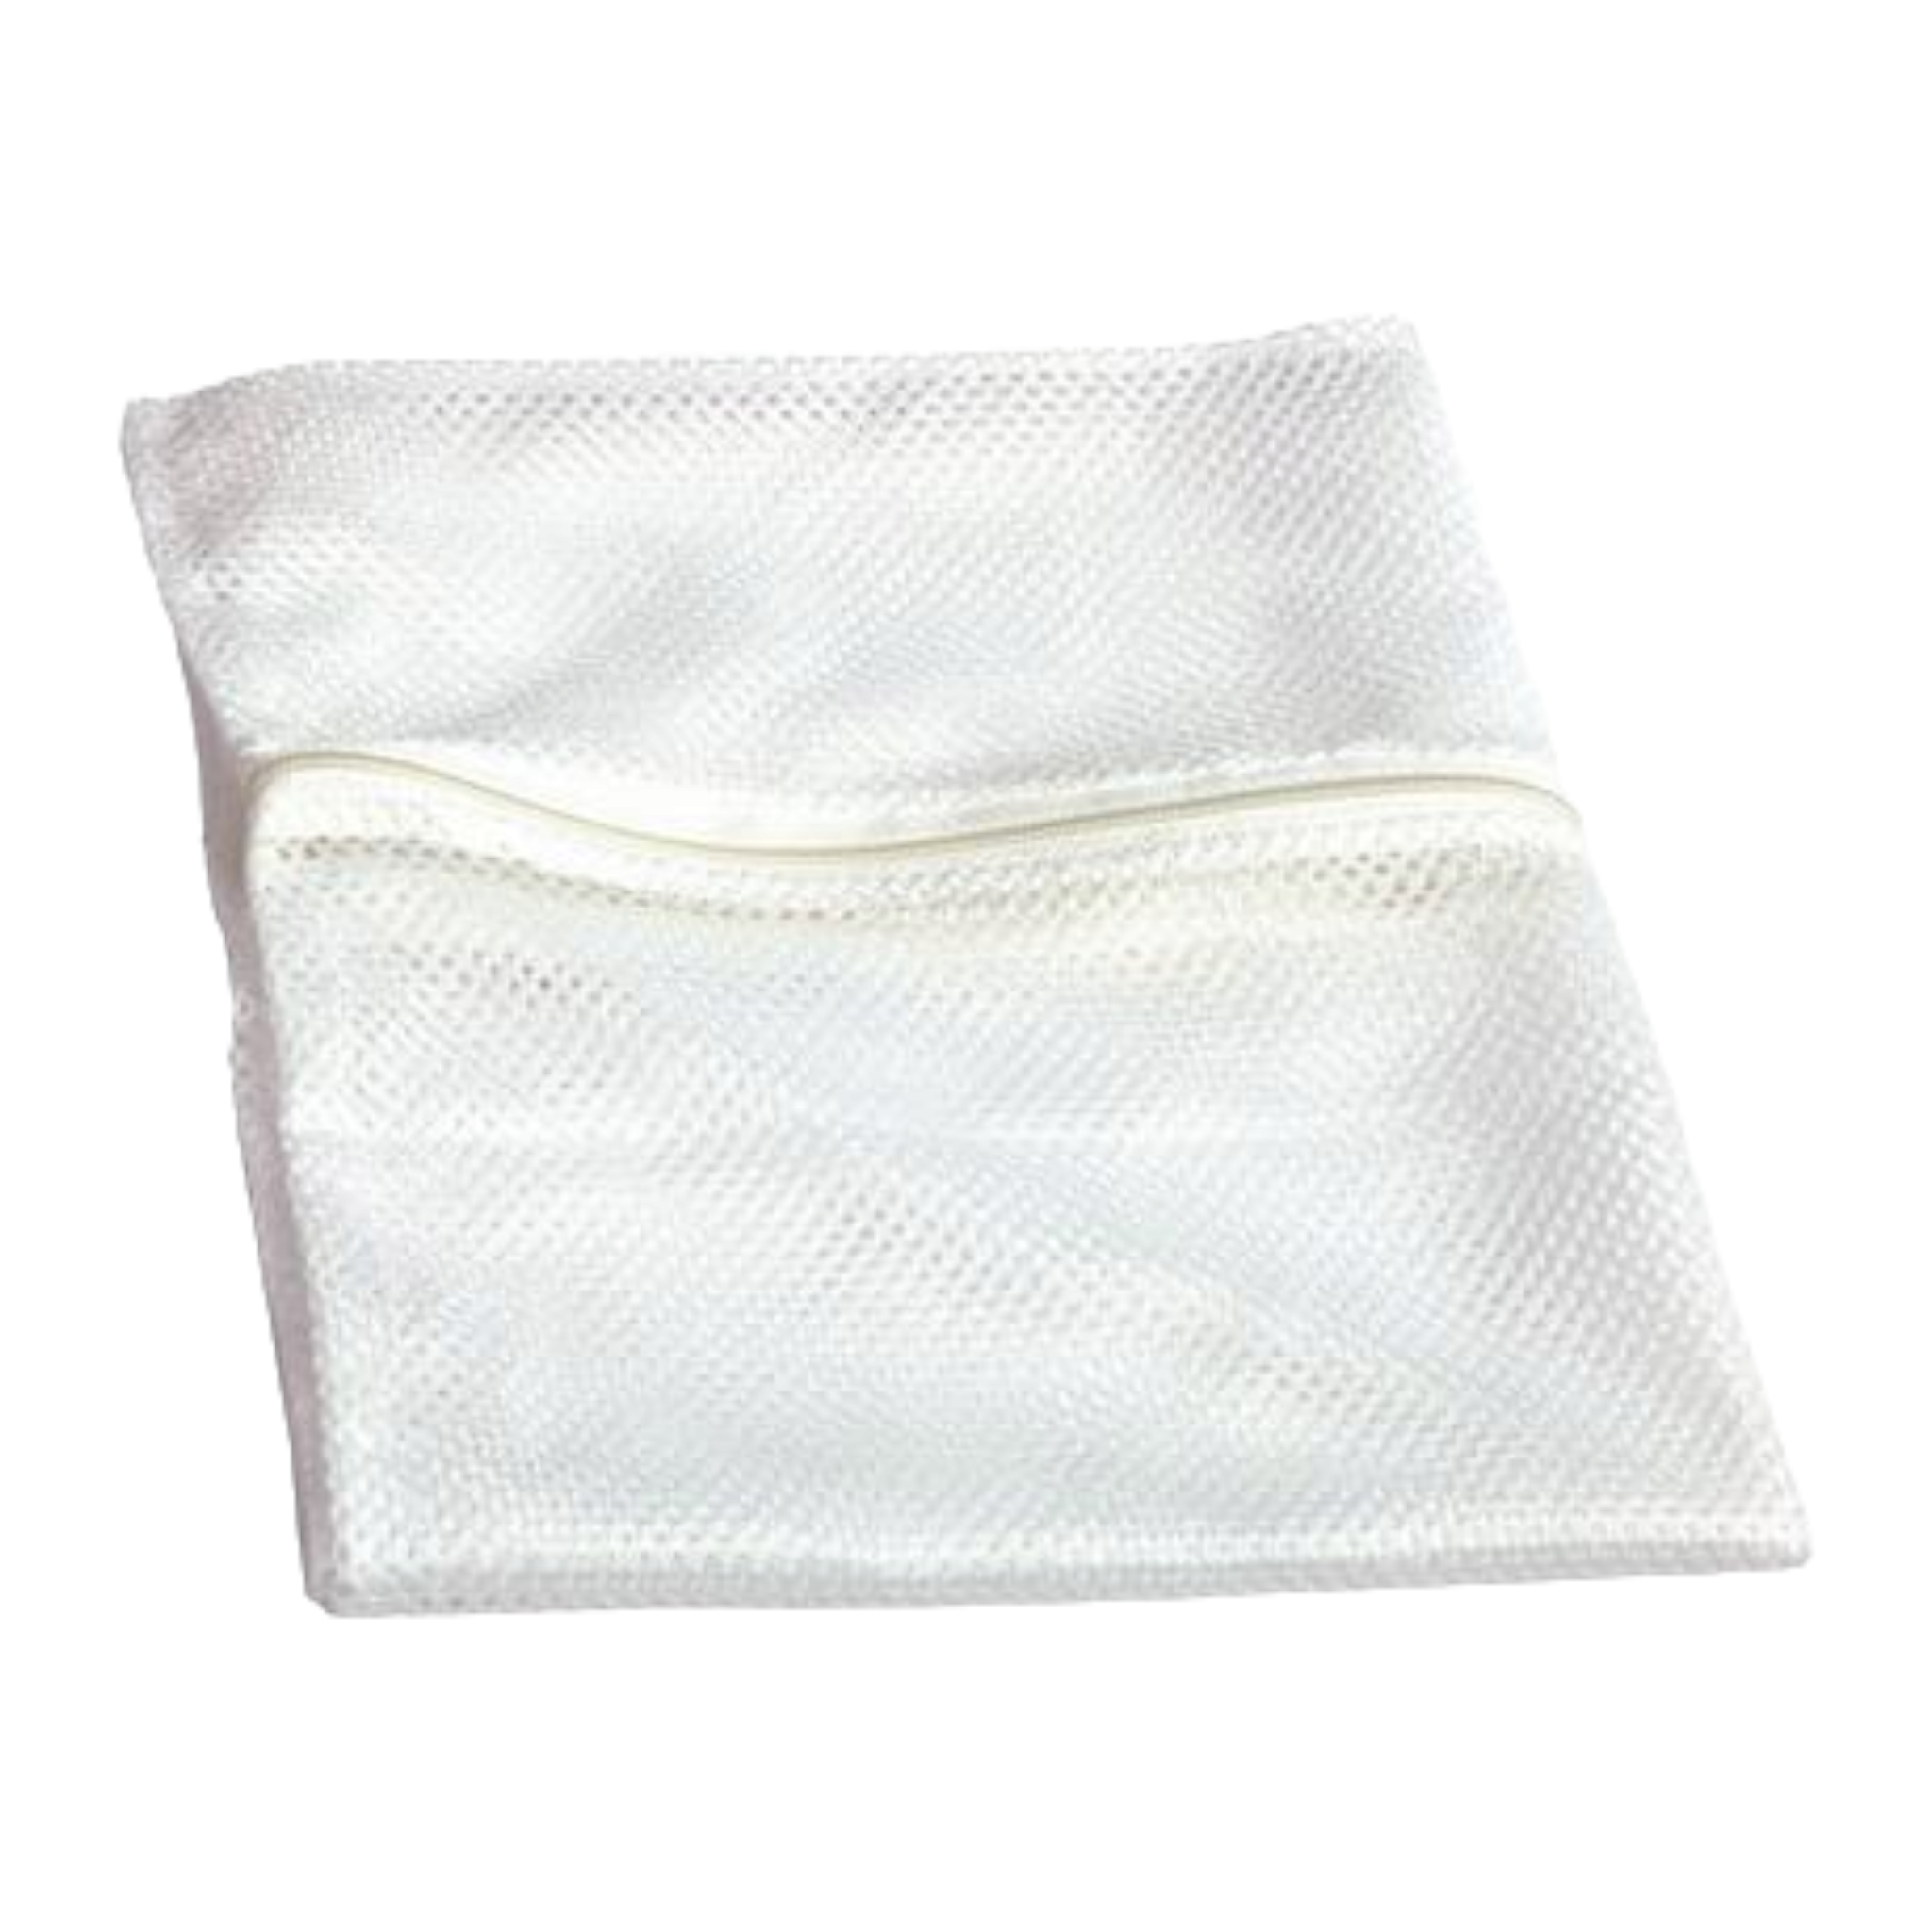 Nylon Washing Machine Bag White with Zip 40x25cm